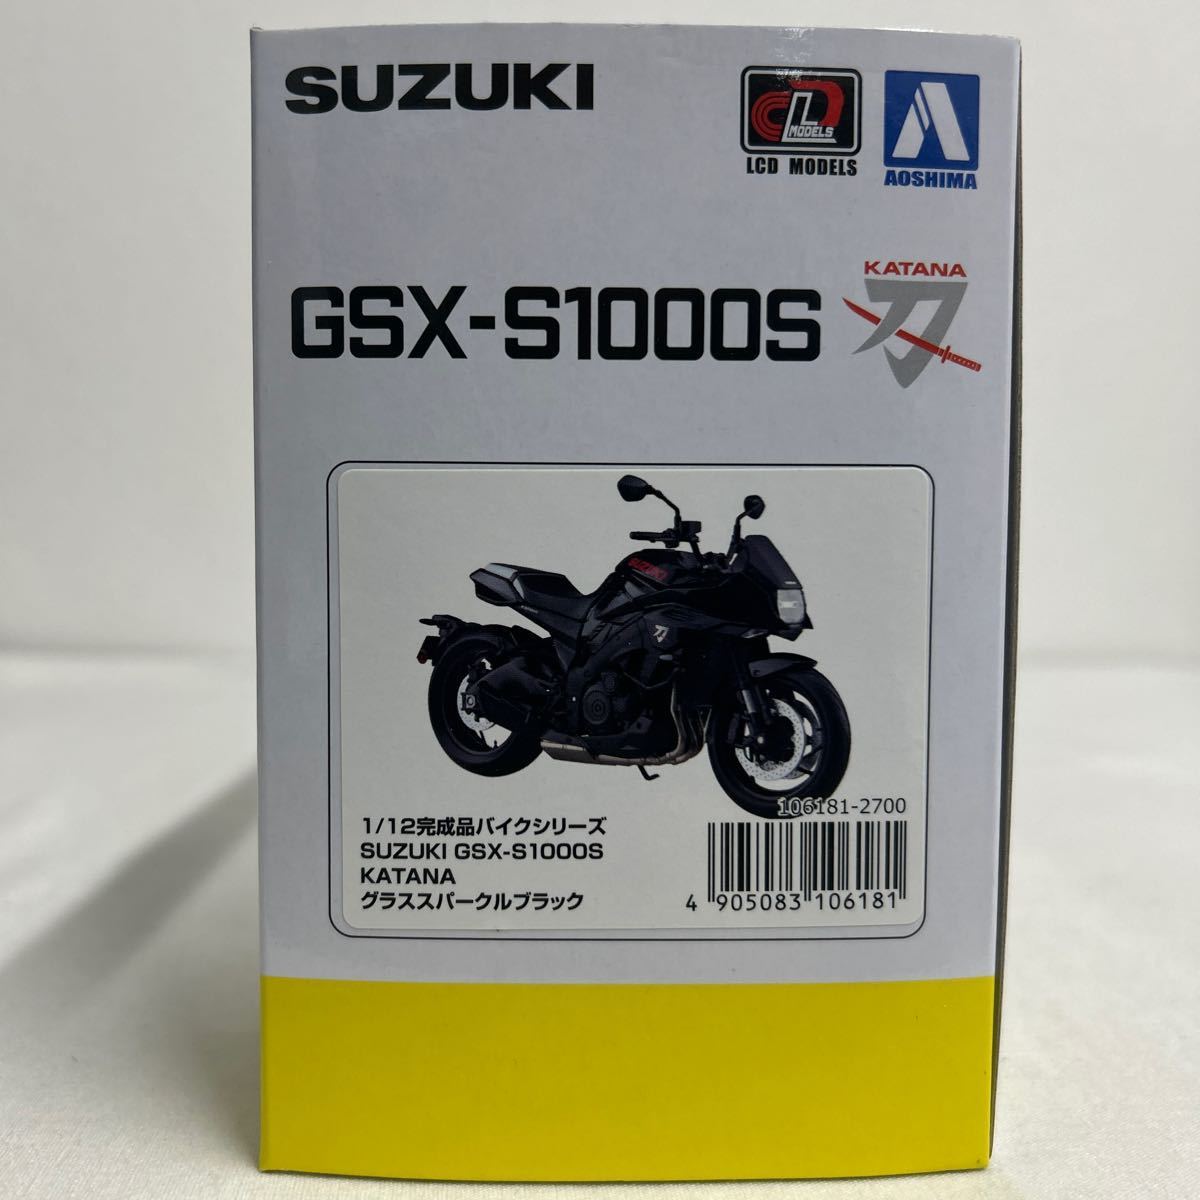 アオシマ 1/12 SUZUKI GSX-S1000S KATANA グラススパークルブラック スズキ カタナ 刀 完成品バイクシリーズ ミニカー モデルカー_画像7